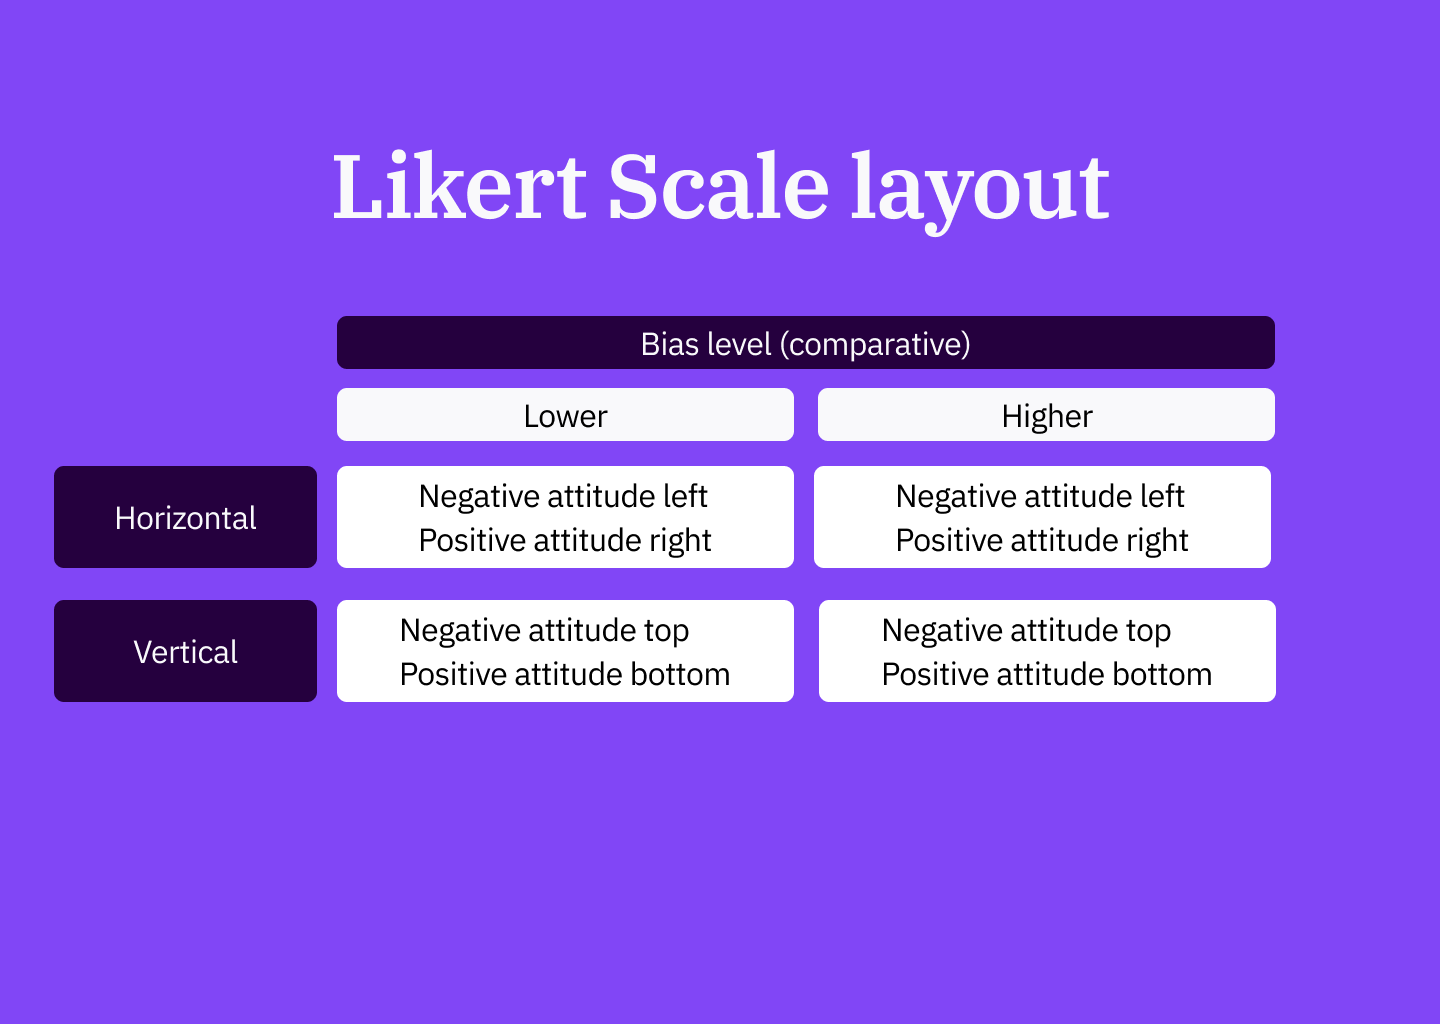 Likert Scale layout